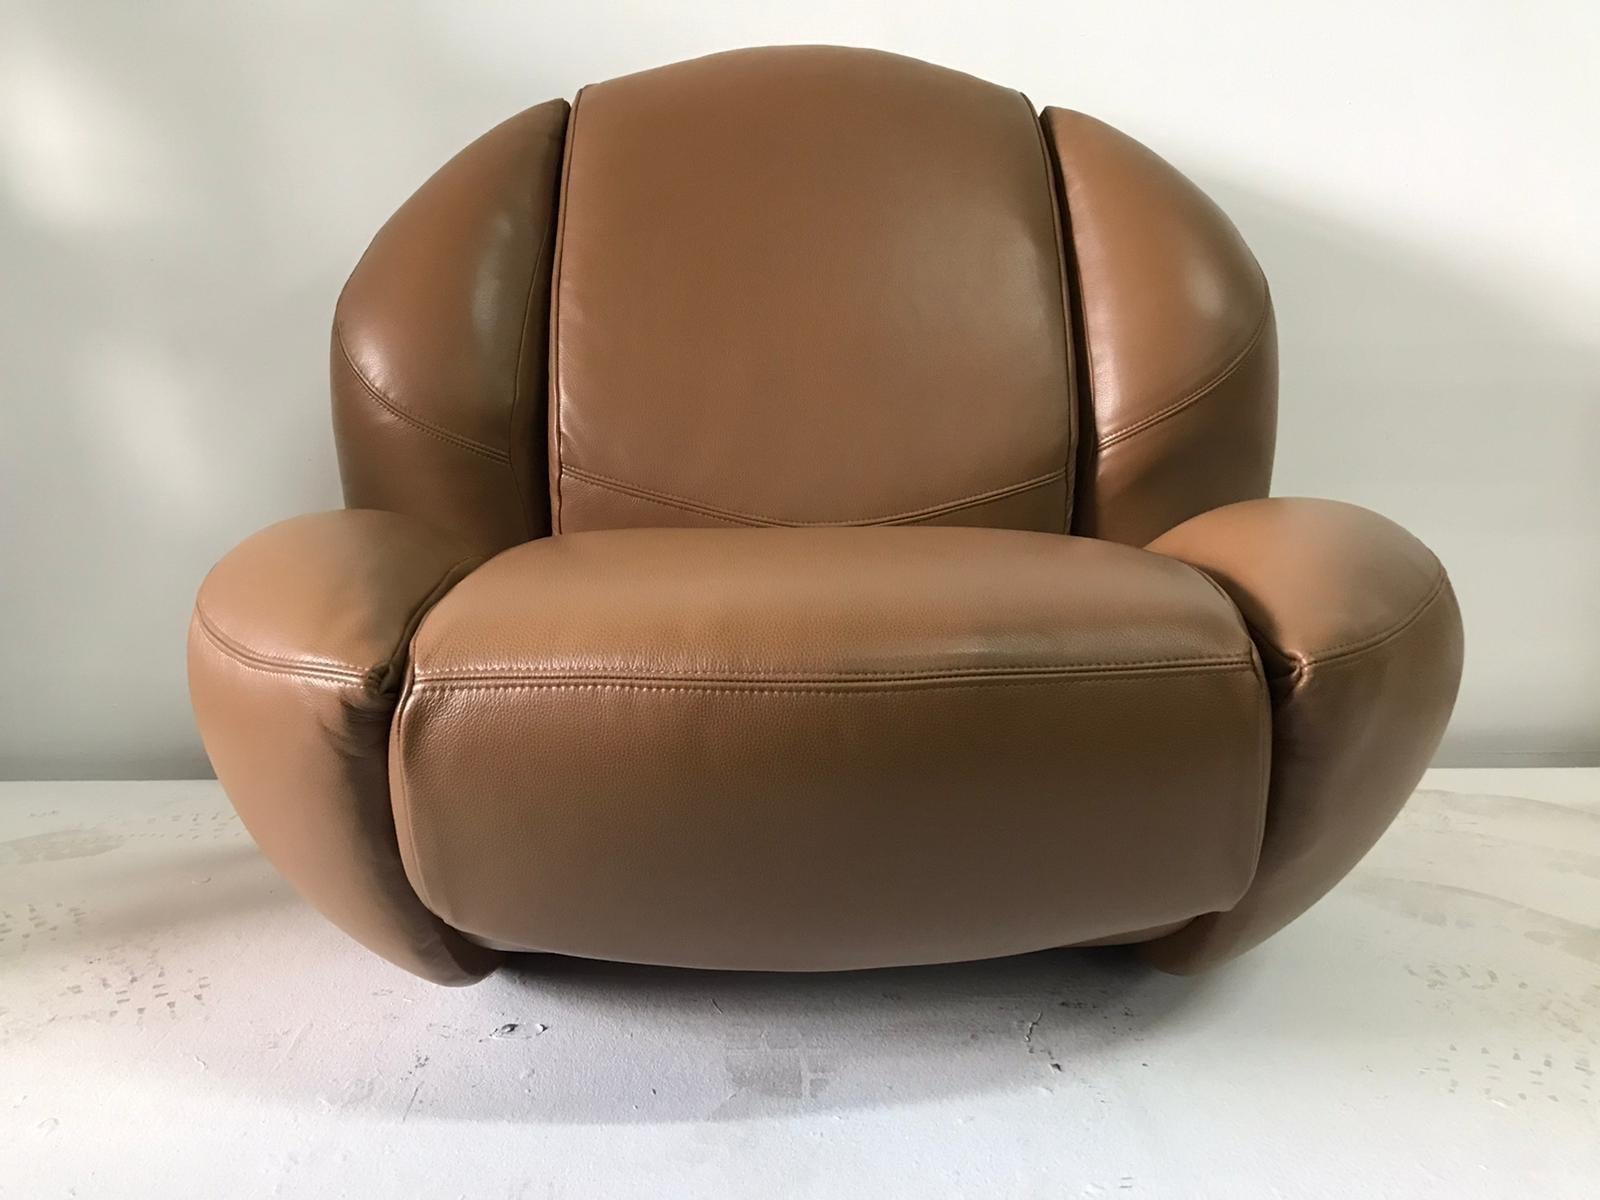 Fachmännisch restauriert und neu gepolstert in feinem Leder (Kamelton), rockt dieser einzigartige und skulpturale italienische Sessel aus den 1960er Jahren von Comfortline, Italia und bietet Erwachsenen bequemen Sitzkomfort. Das ursprüngliche Label